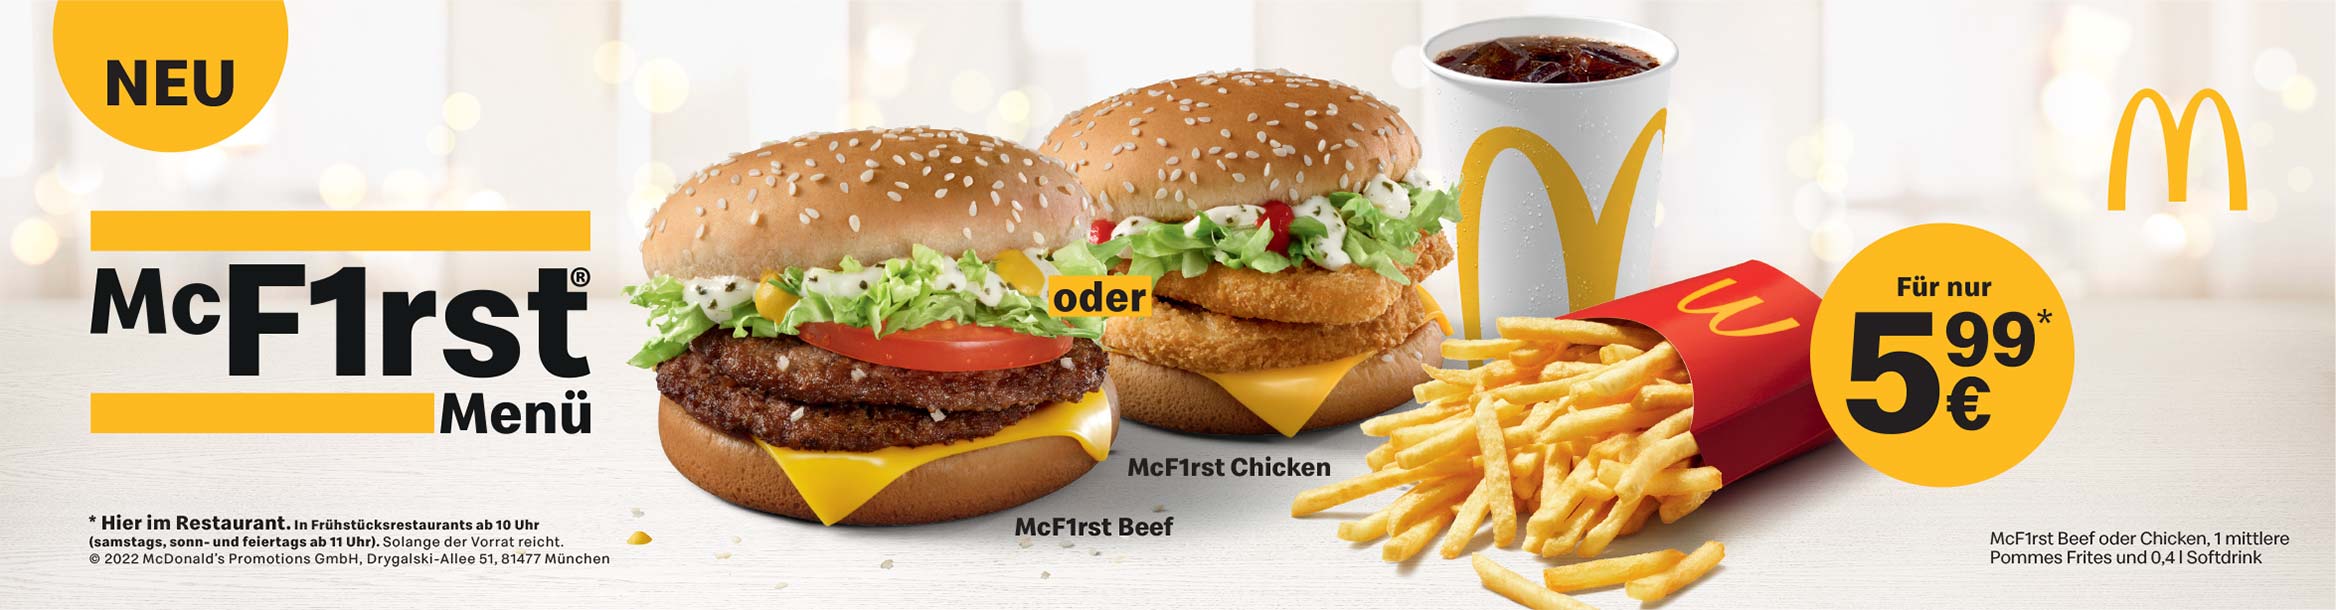 McDonald's McF1rst Menü